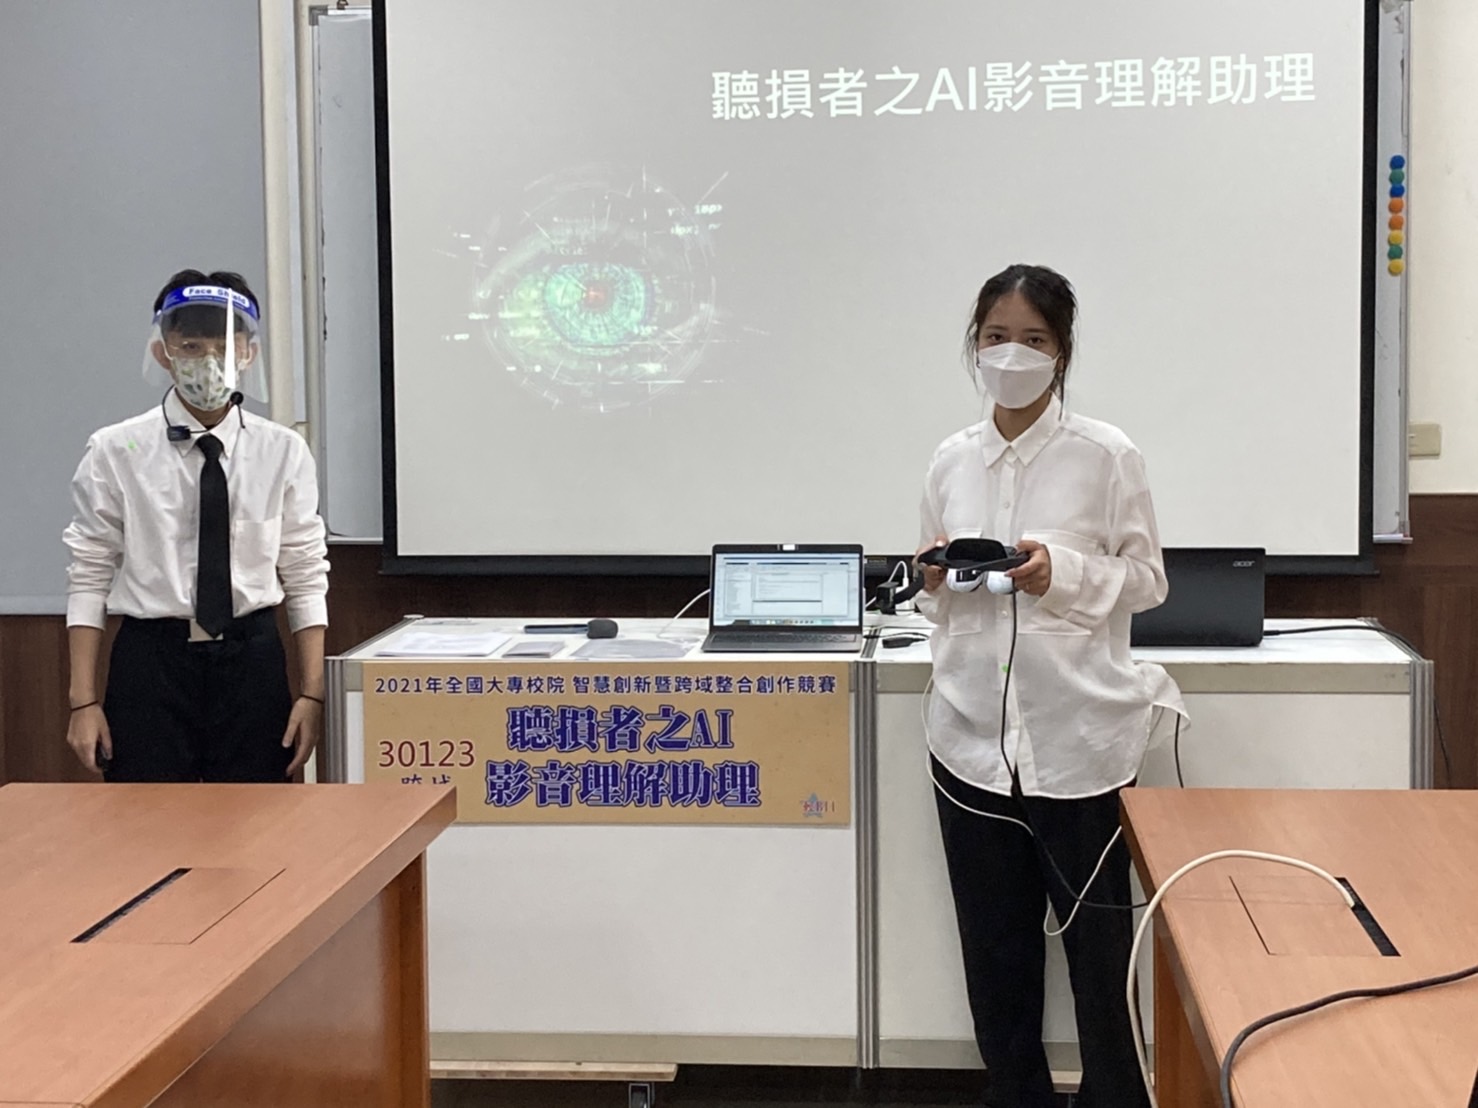 陸妍諭同學（左）、潘欣余同學在比賽現場，報告「聽損者之AI影音理解助理」